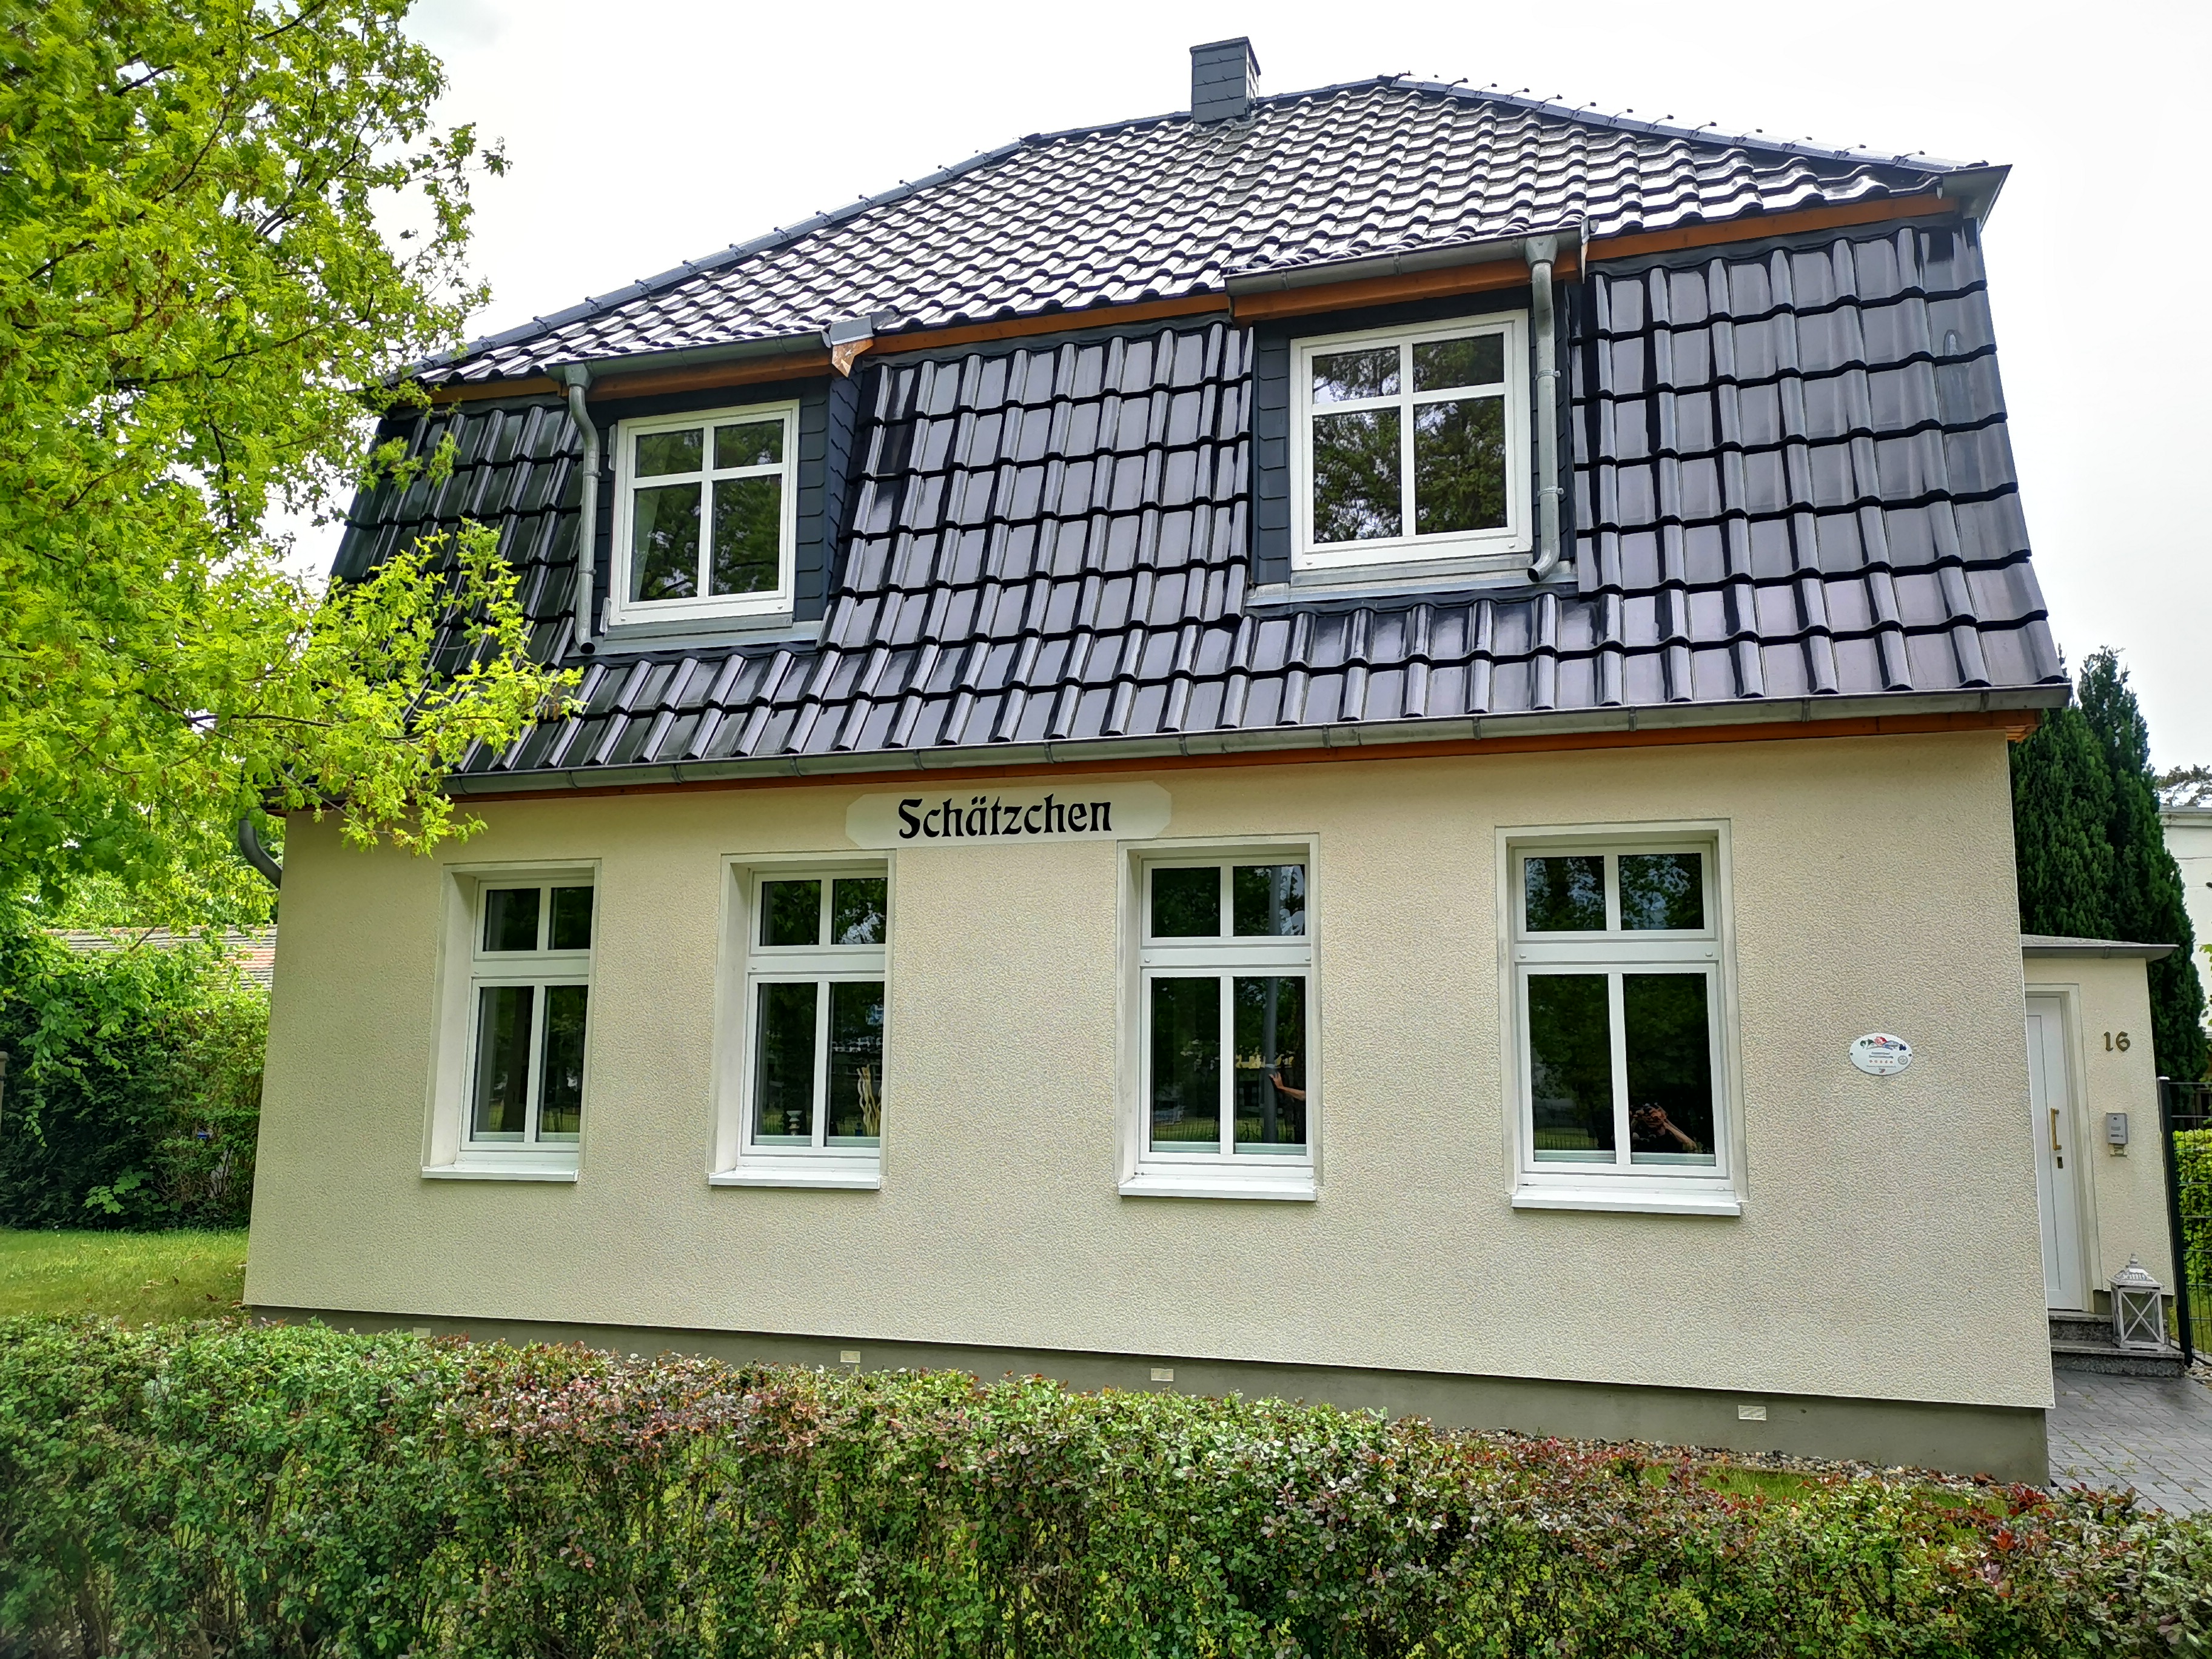 Nachher Bild des Einfamilienhauses mit sauberer Fassade